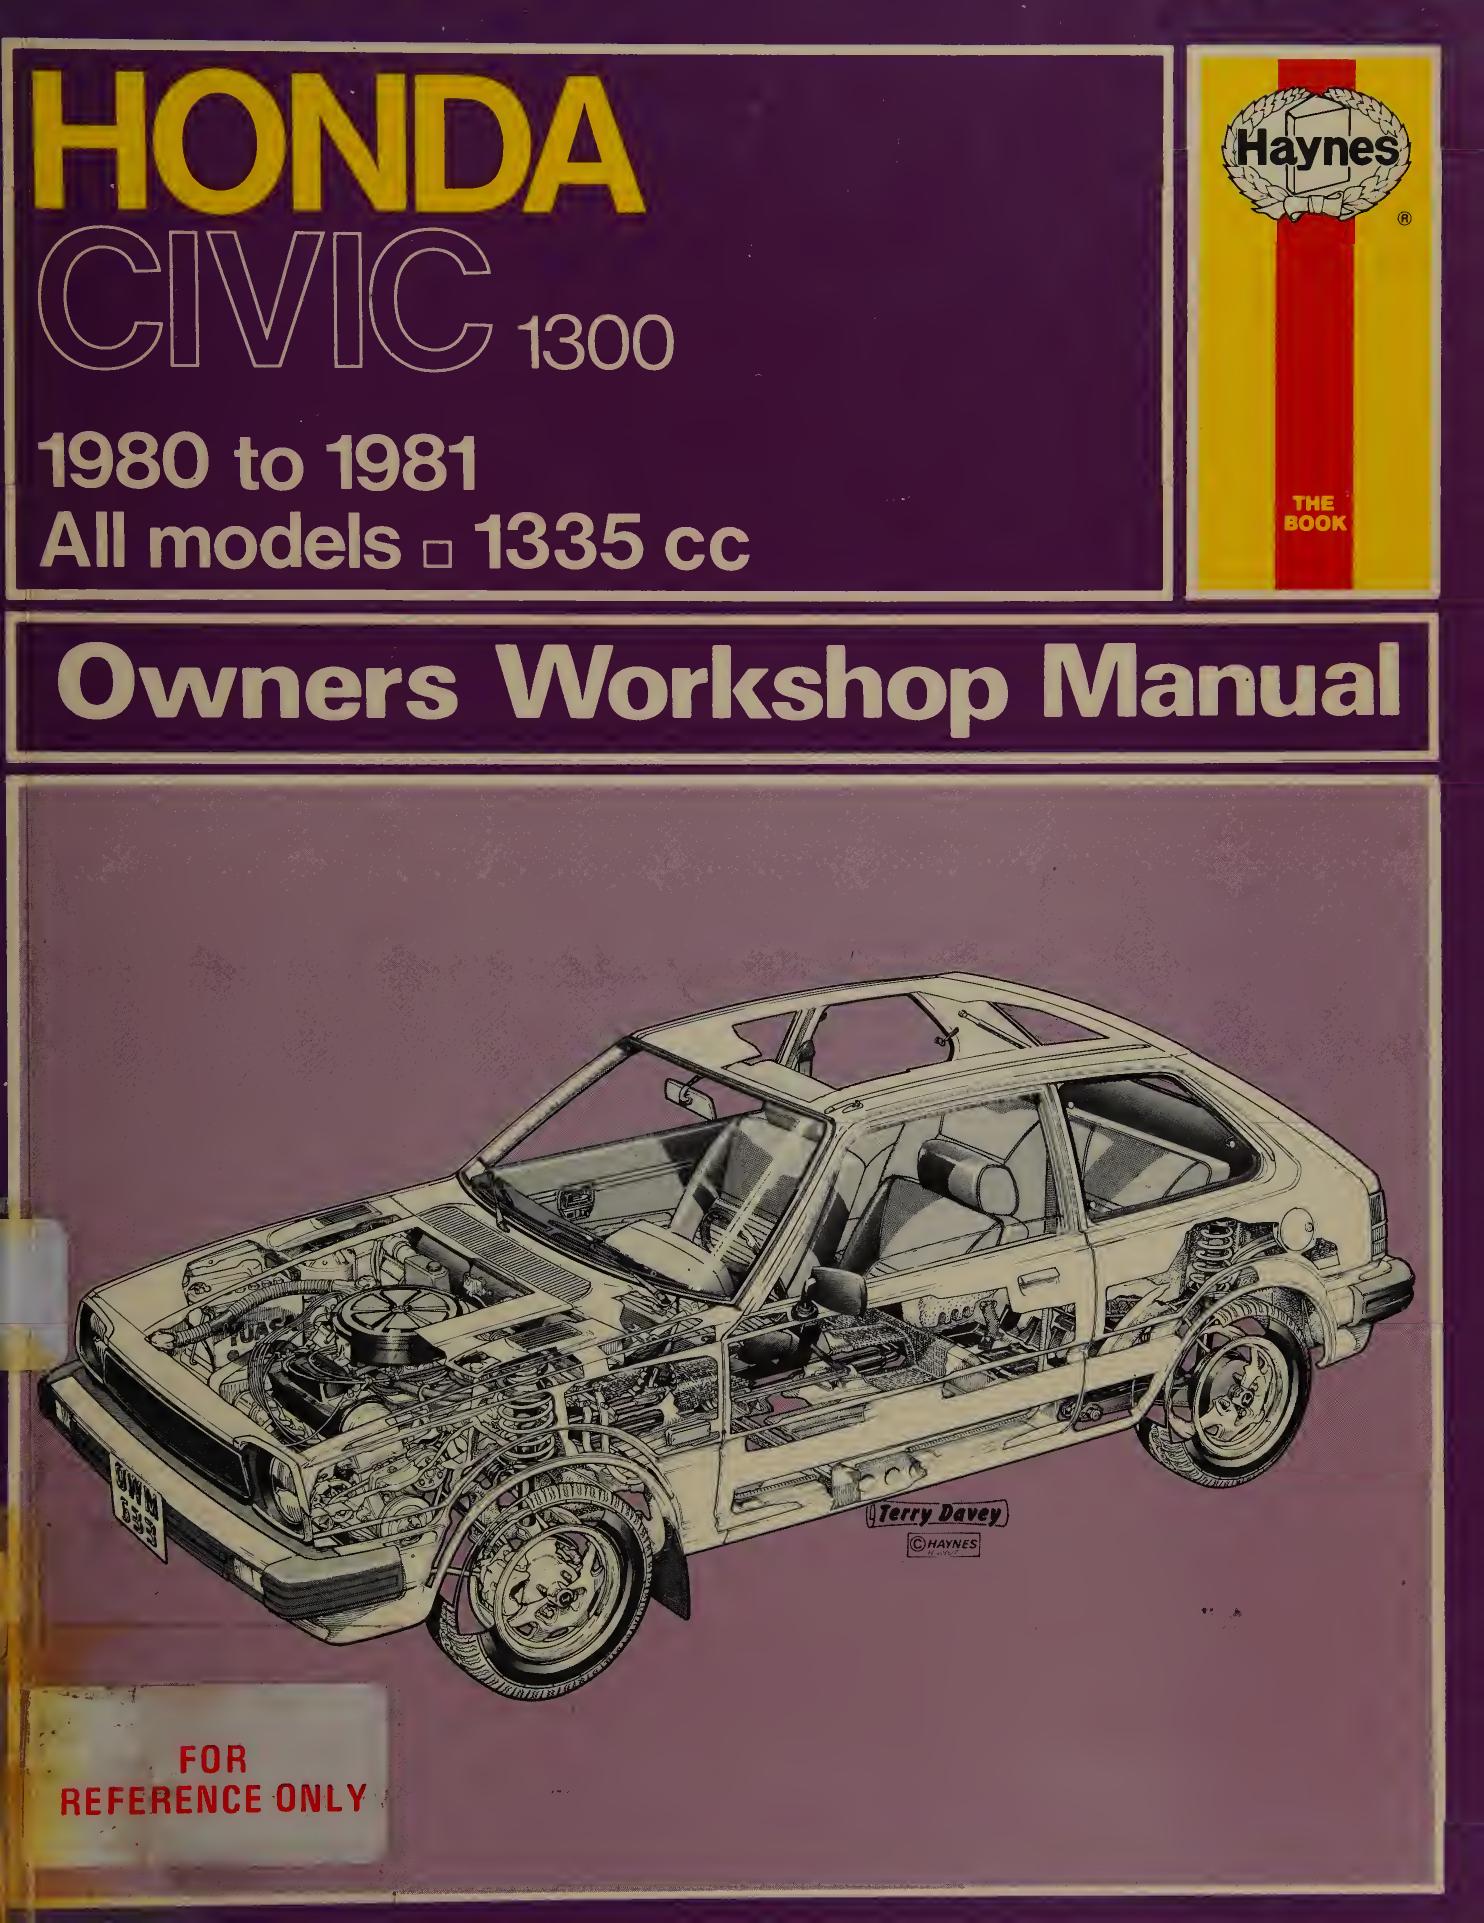 Haynes Honda Civic Owners Workshop Manual by Alec J. Jones